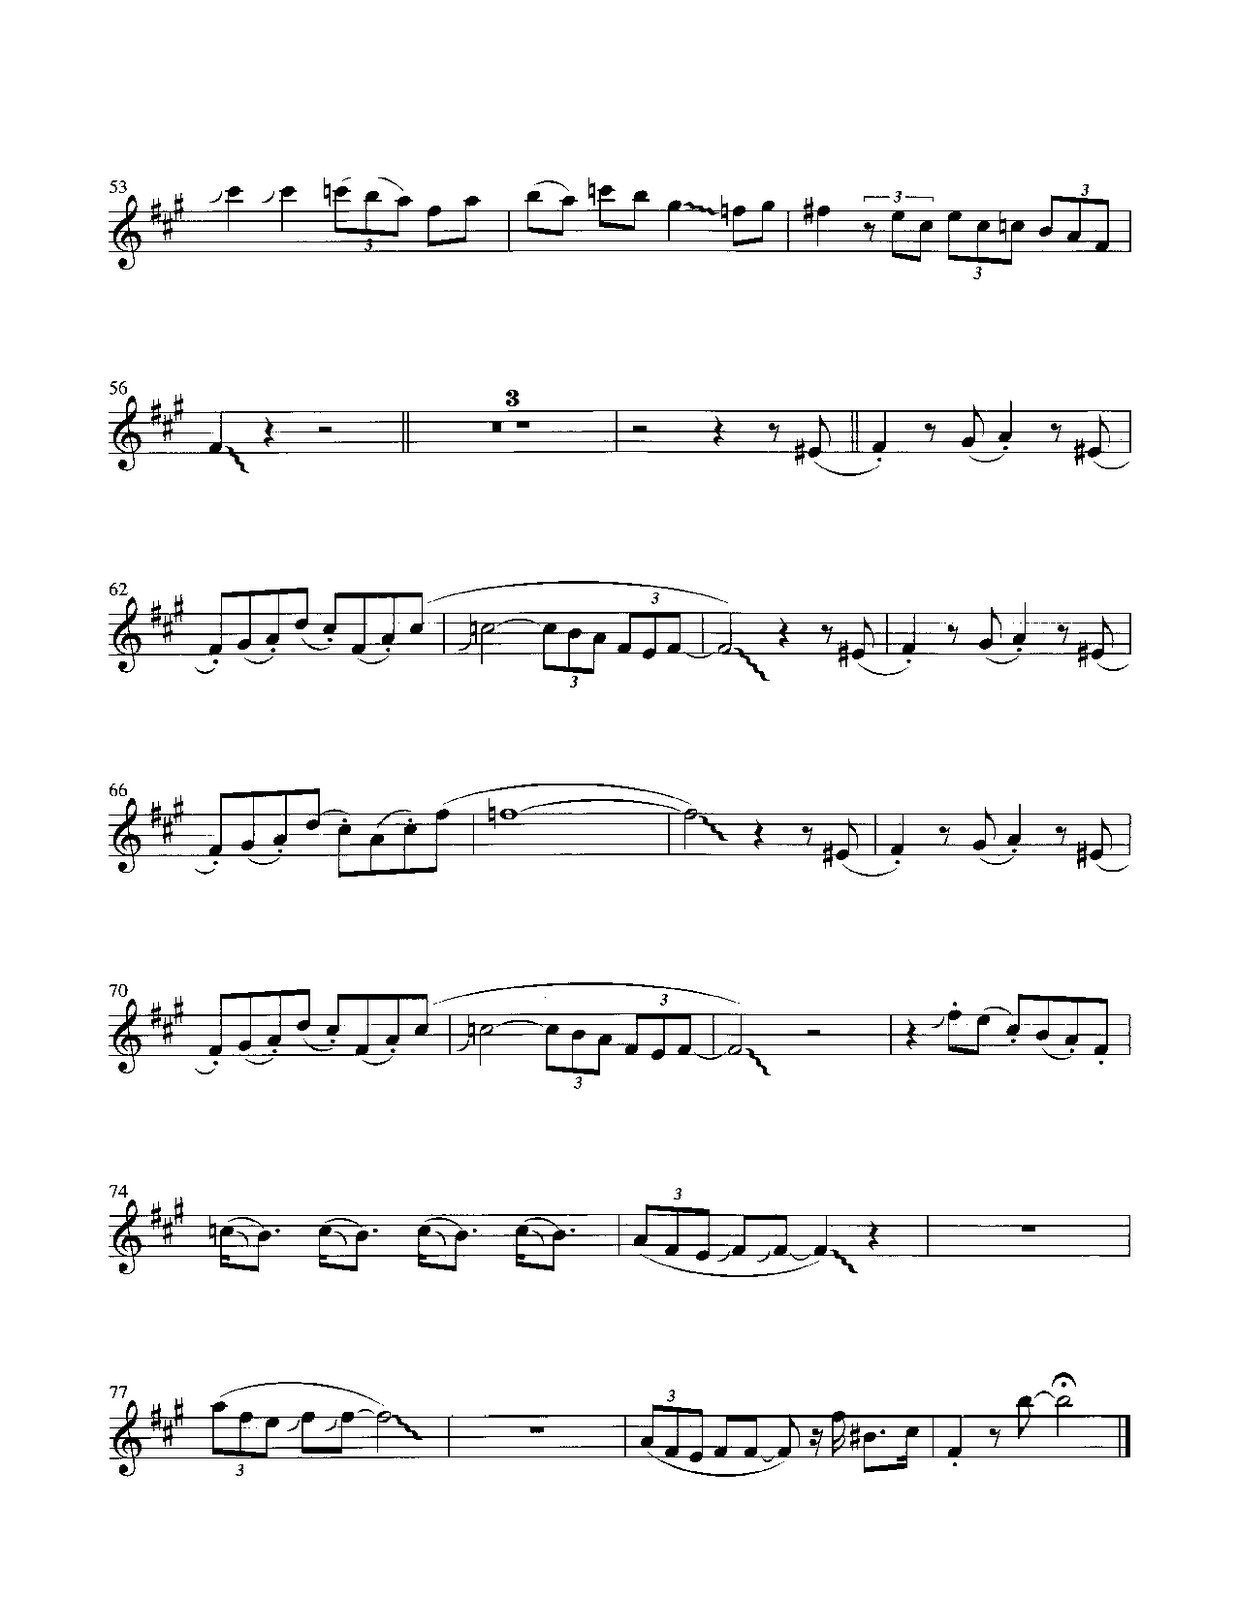 Pink Panther - Henry Mancini Score And Track (Sheet Music Free - Free Printable Alto Saxophone Sheet Music Pink Panther